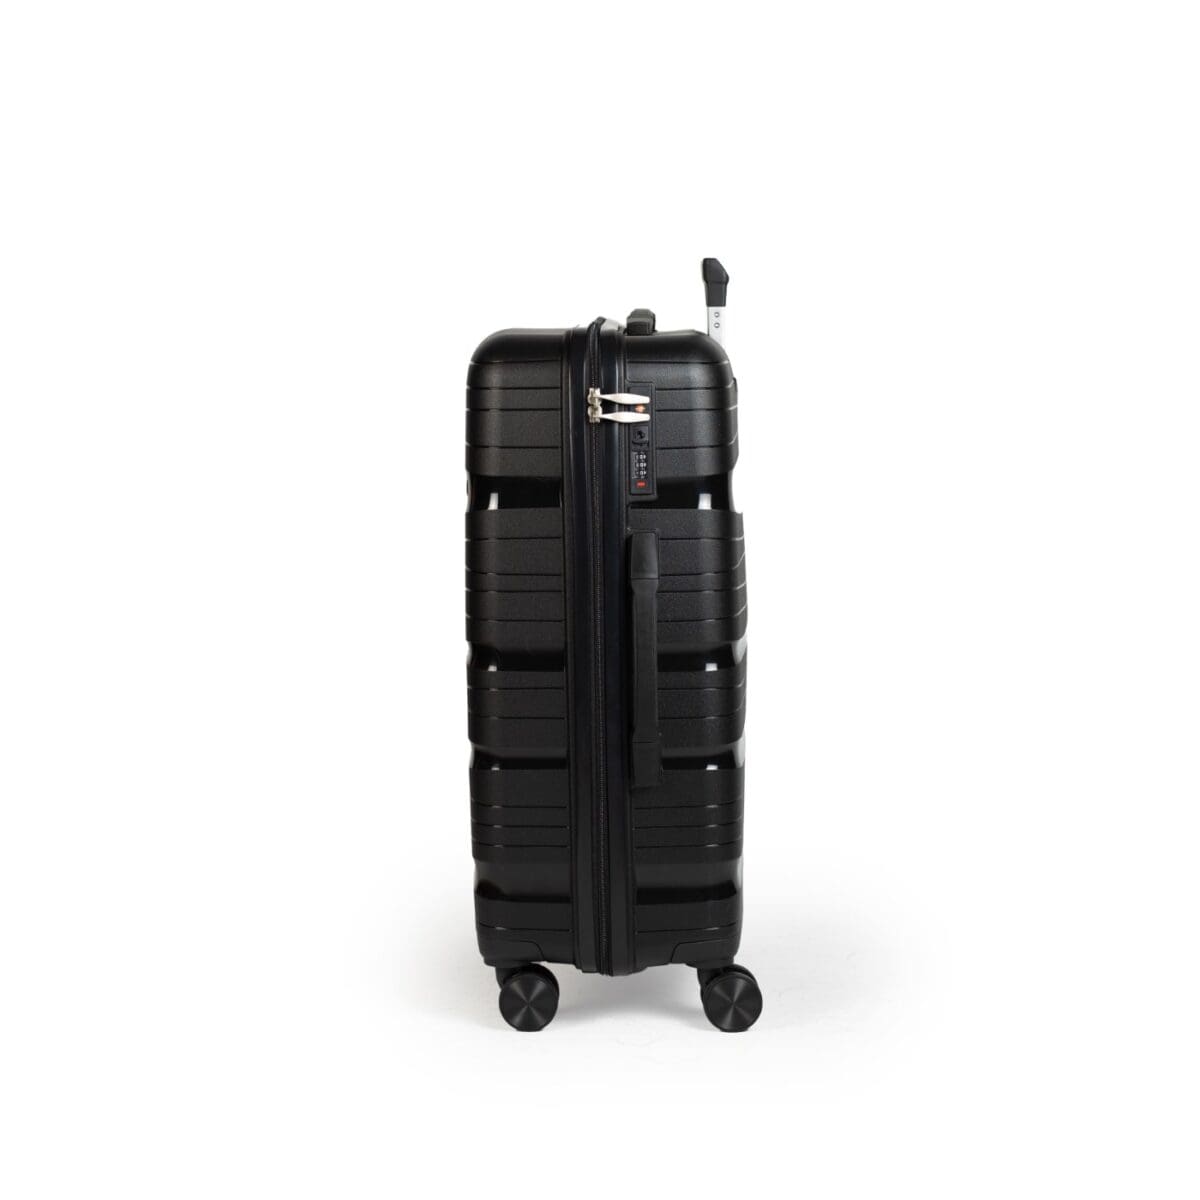 Αριστερή πλευρά βαλίτσας με χερούλι και συνδυασμό tsa σε μαύρο χρώμα